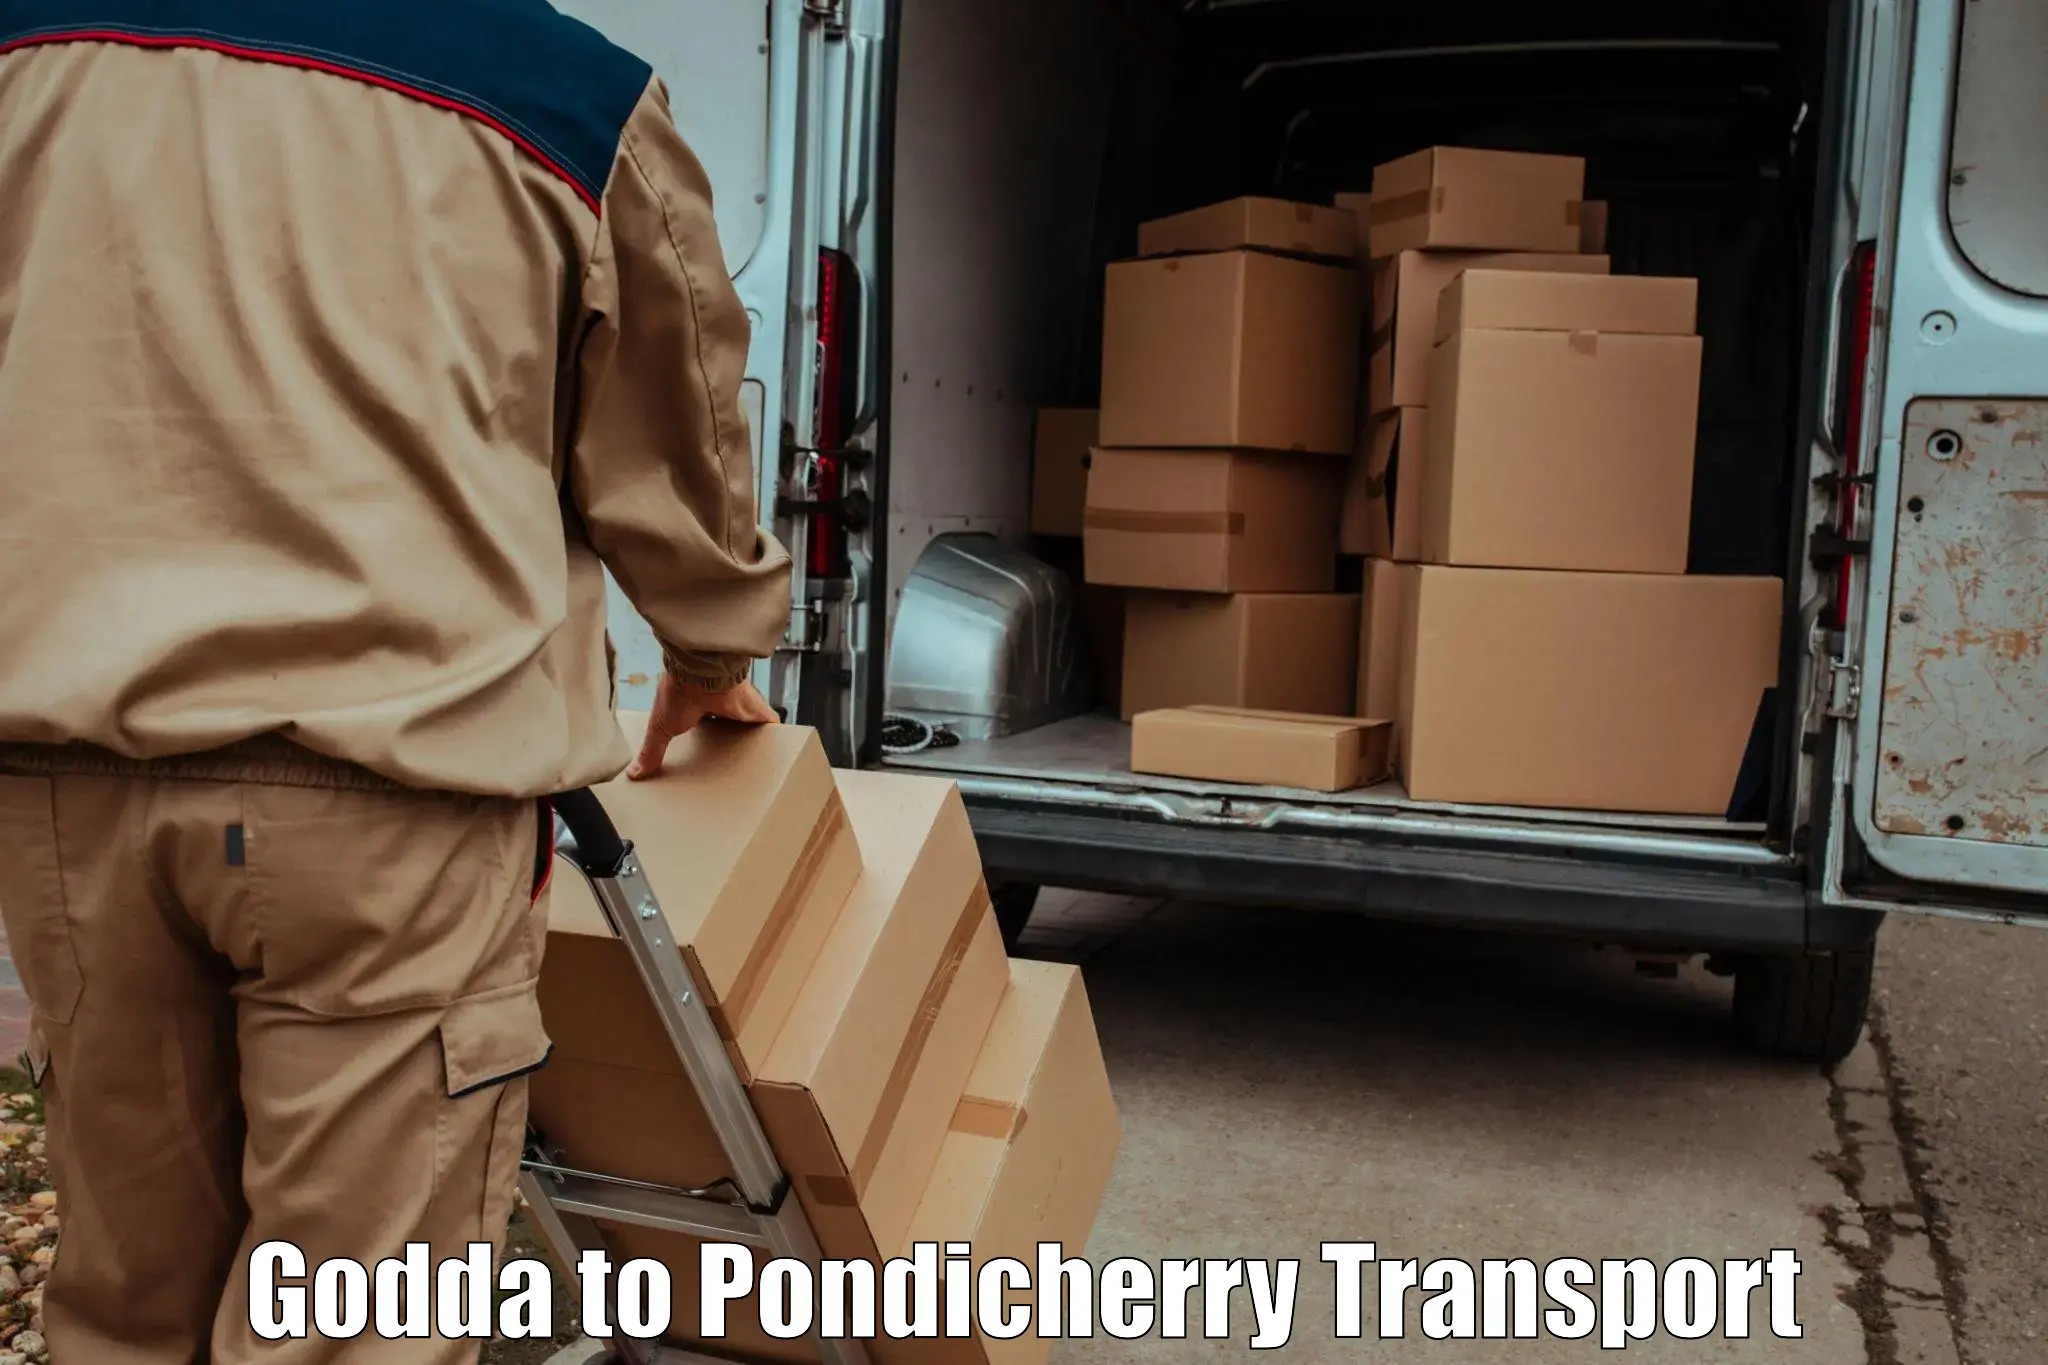 Nearby transport service Godda to Pondicherry University